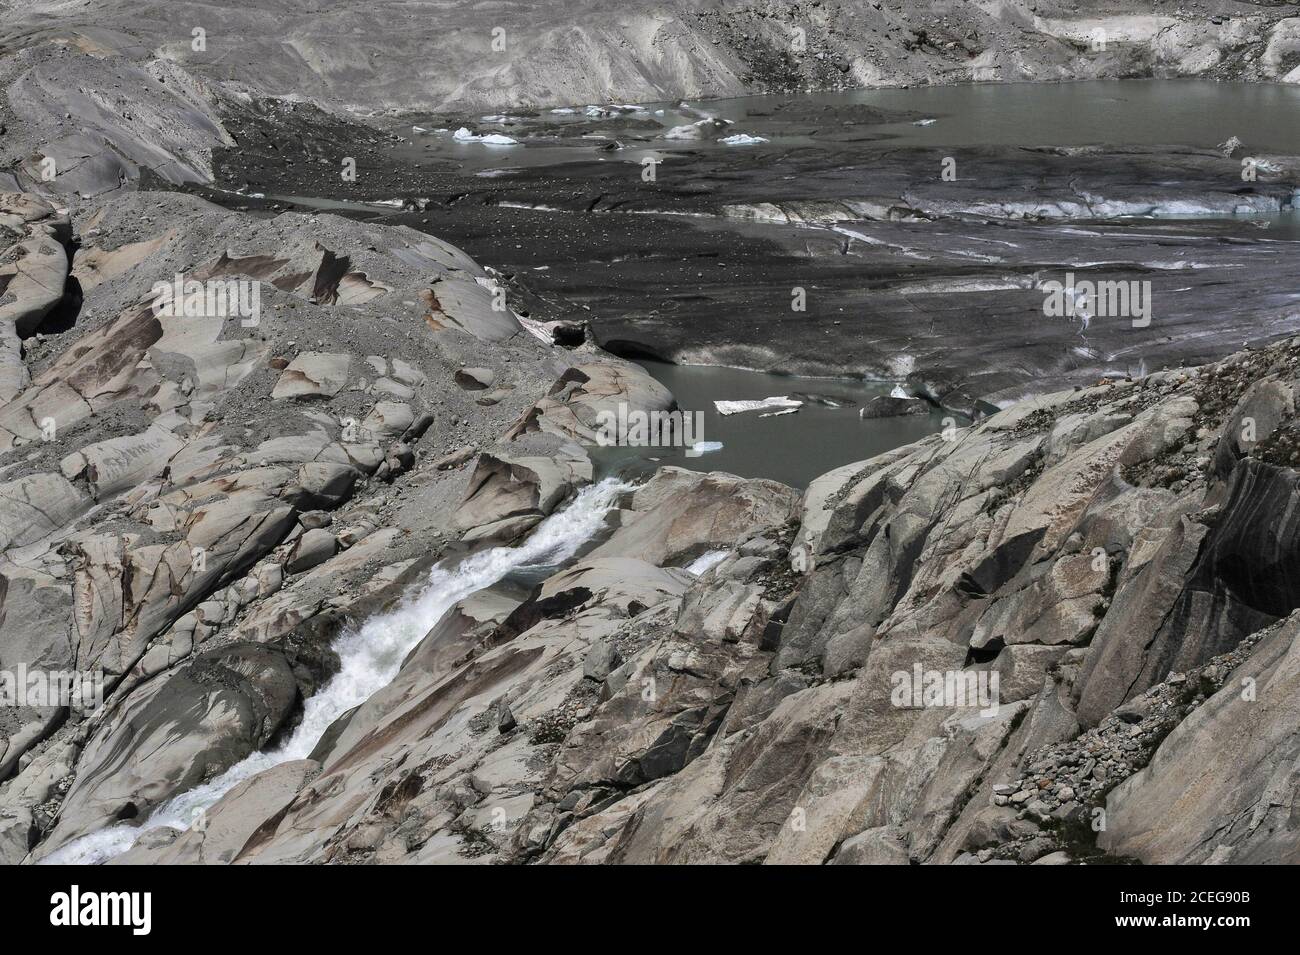 Gli scienziati del clima incolpano il riscaldamento globale per il retrattamento del ghiacciaio Rhône, sorgente del fiume Rhône, che si fonde ora in estate sotto il Passo Furka nel Cantone Vallese, Svizzera, a un'altitudine di circa 2,208 m (7,244 piedi). Nel 1850, una lingua di ghiaccio si estendeva bene lungo il fianco della montagna prima di fondersi nella valle sottostante. Il ghiacciaio scorre per 7.65 km (4.75 mi) dai campi innevati delle alte Alpi Urner a circa 30 - 40 m (100 - 130 piedi) all'anno. Il torrente che scorre dal lago d'acqua fusa inizia il viaggio del fiume di 813 km (505 mi) attraverso la Francia meridionale verso il Mediterraneo. Foto Stock